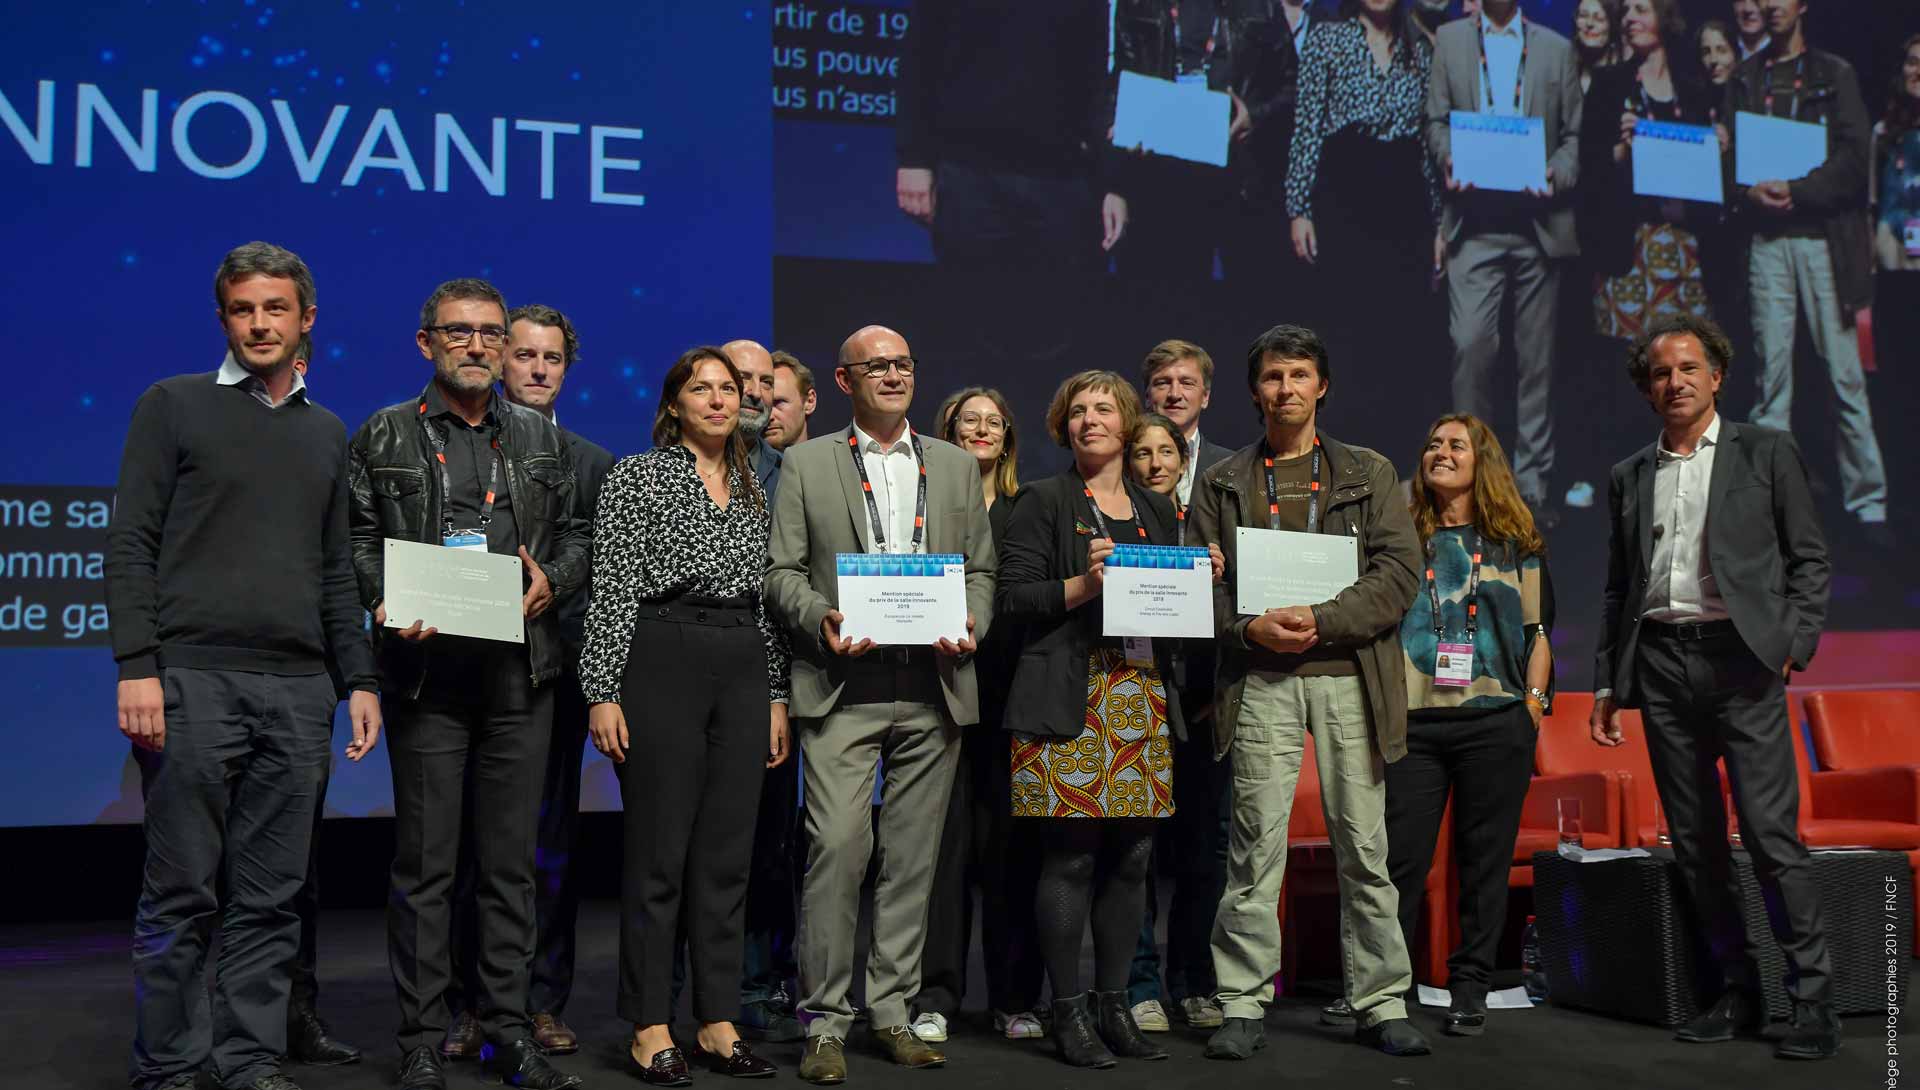 Les lauréats 2019 des prix de la salle innovante Jean-Luc Mege